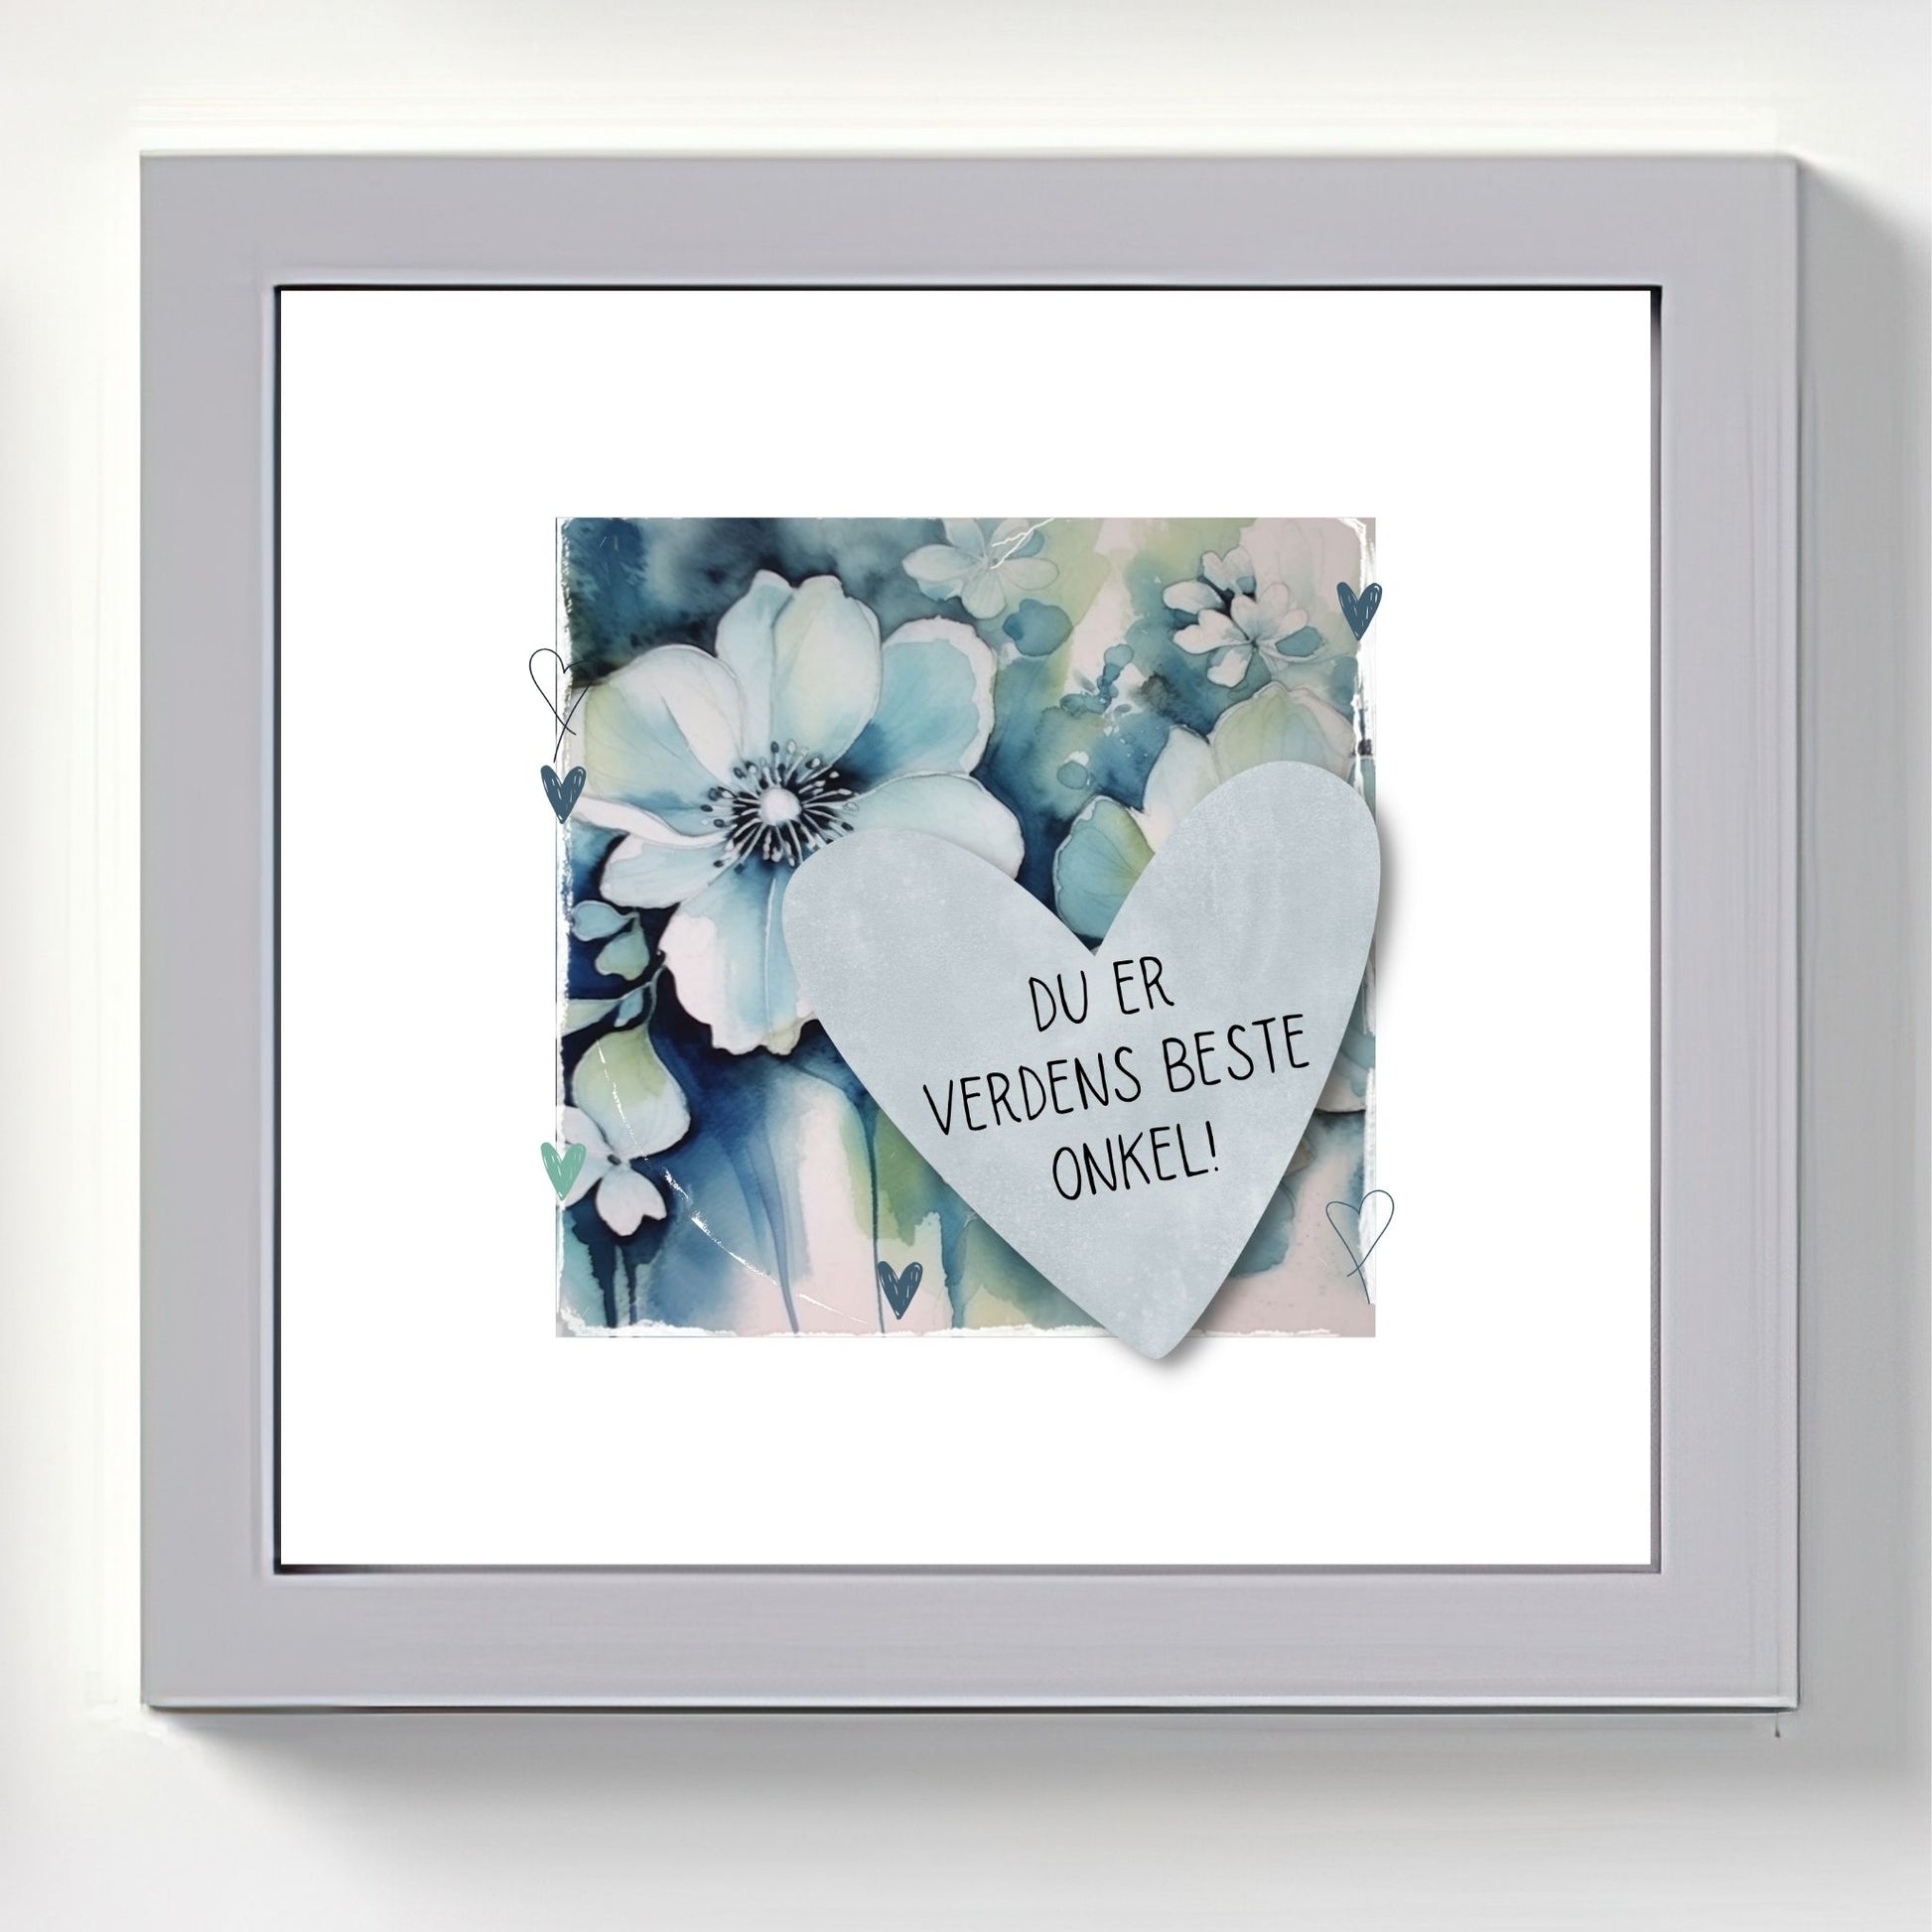 Grafisk plakat med et lyseblått hjerte påført tekst "Du er verdens beste onkel!". Bagrunn med blomster i blåtoner. Illustrasjon viser plakat i grå ramme.